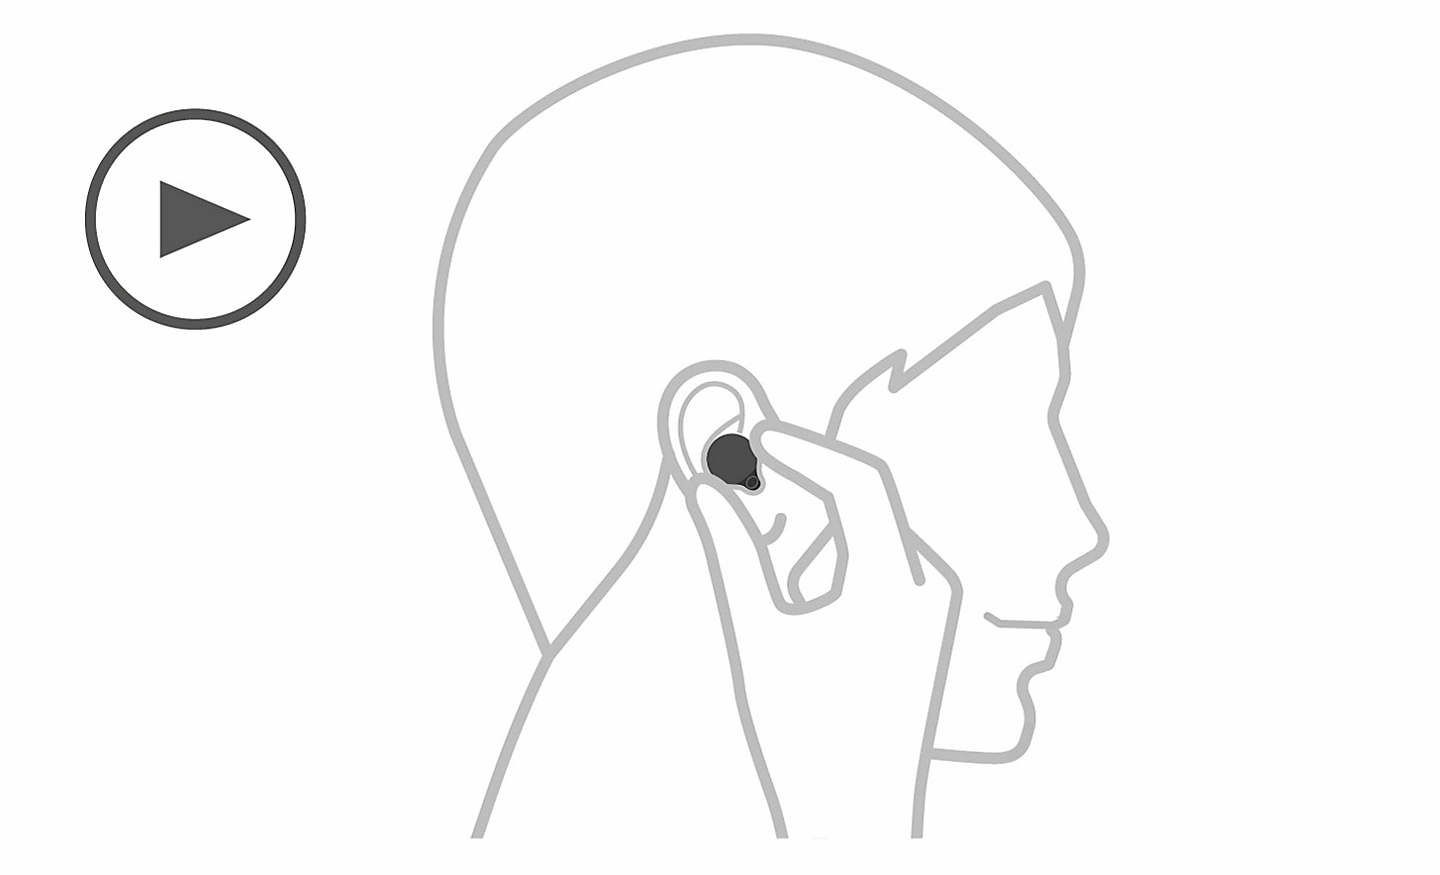 Hình minh họa một đầu người, bên trái có biểu tượng phát và một bàn tay đang nhét tai nghe vào tai